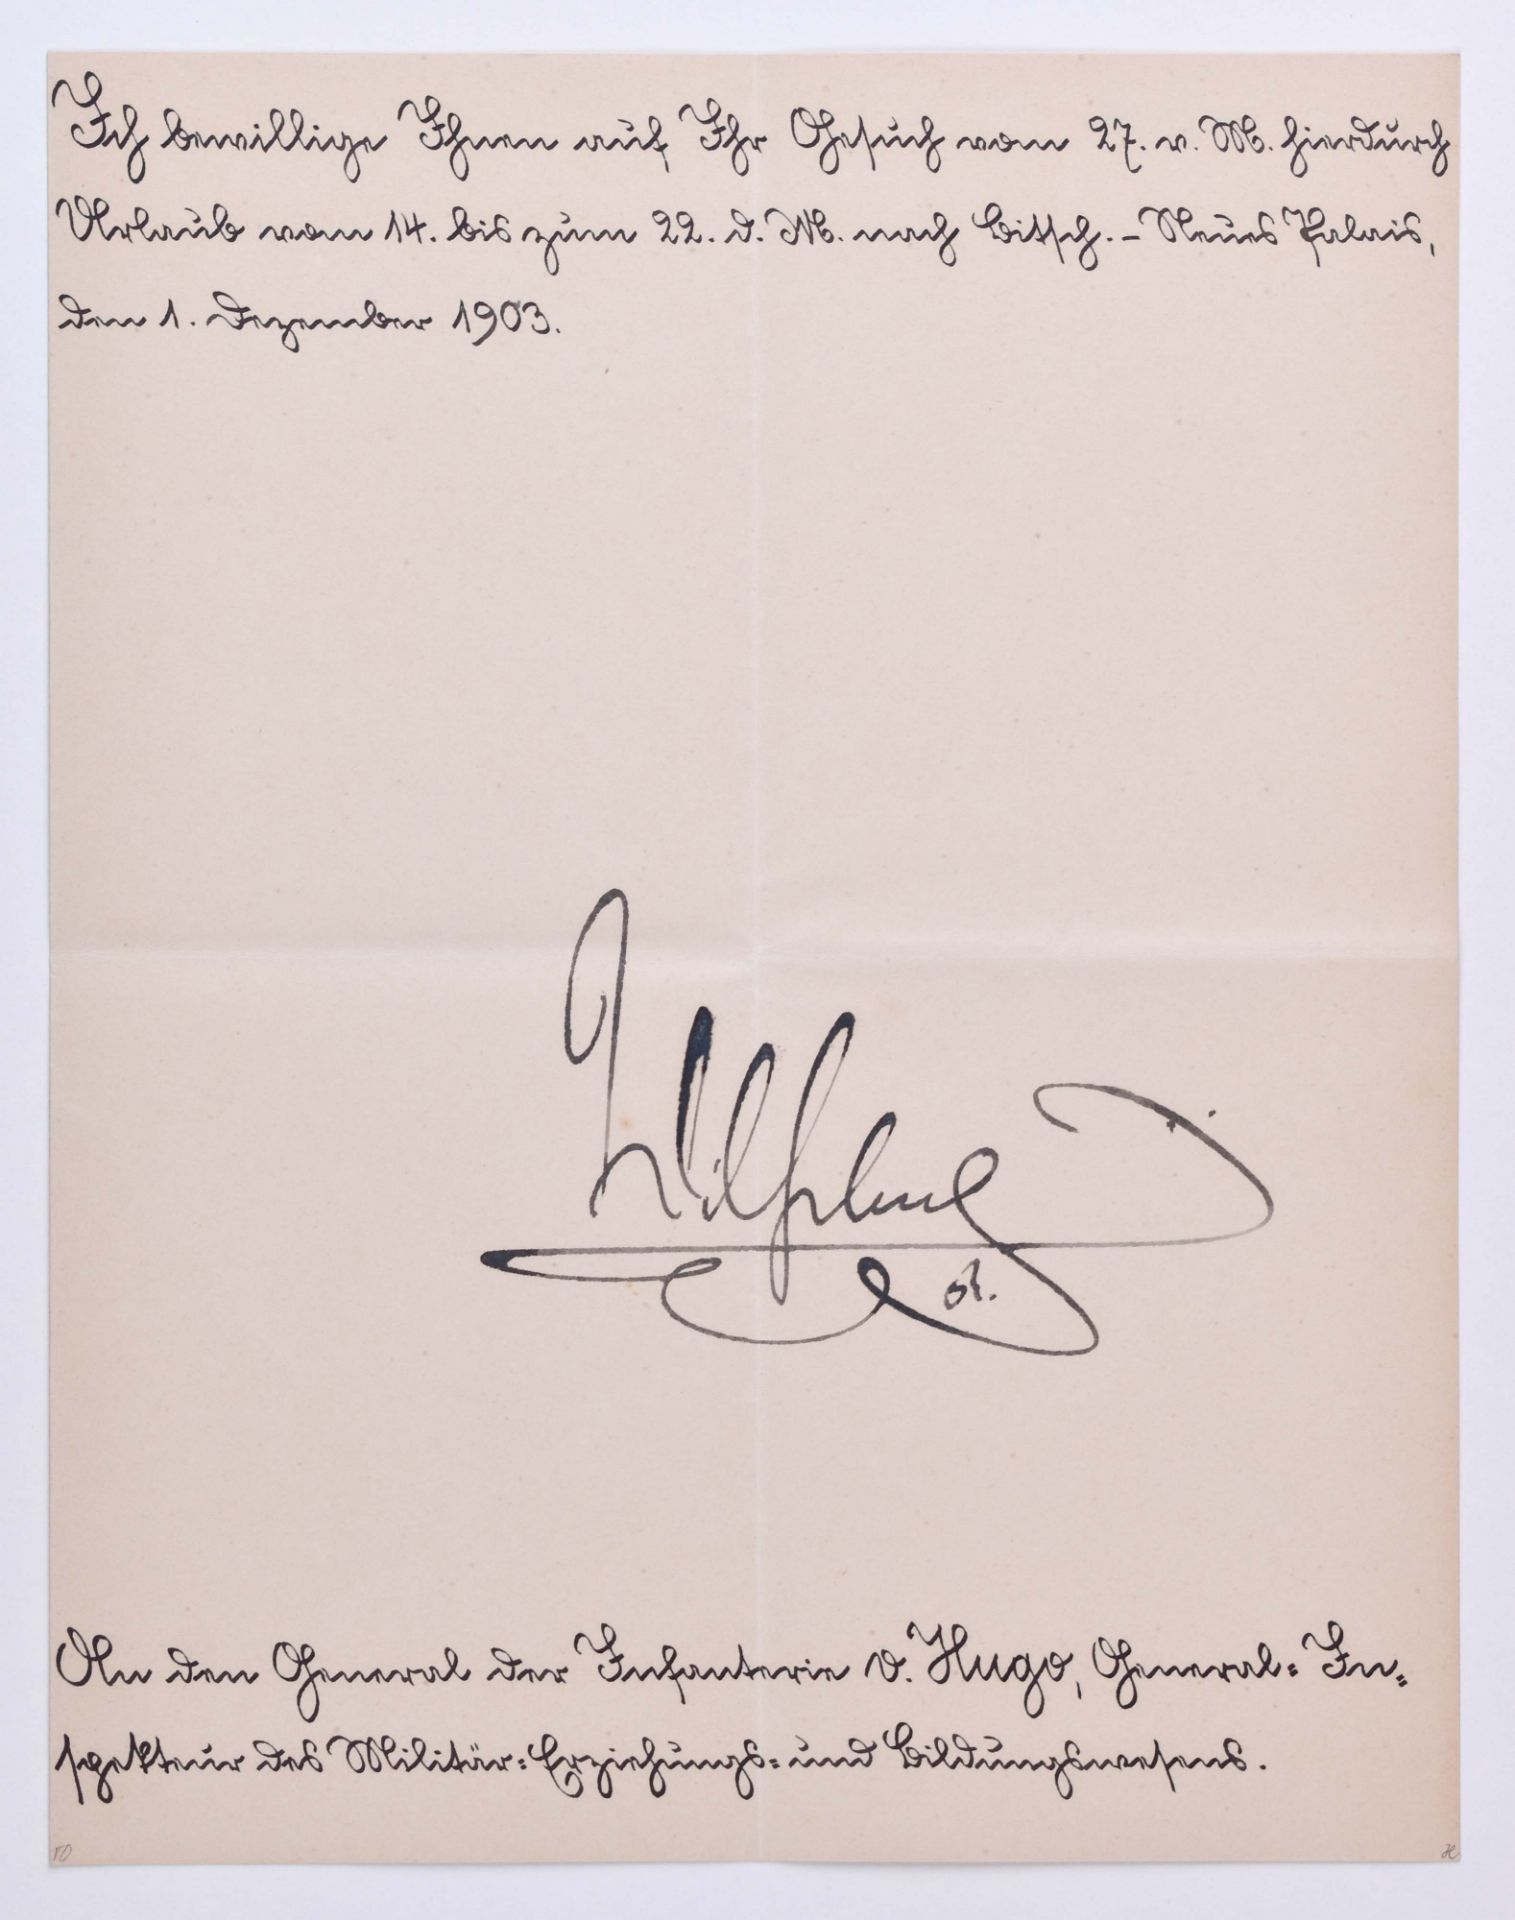 Urlaubsbewilligung vom 1.12.1903Urlaubsbewilligung für General der Infantrie Carl-Georg von Hugo,